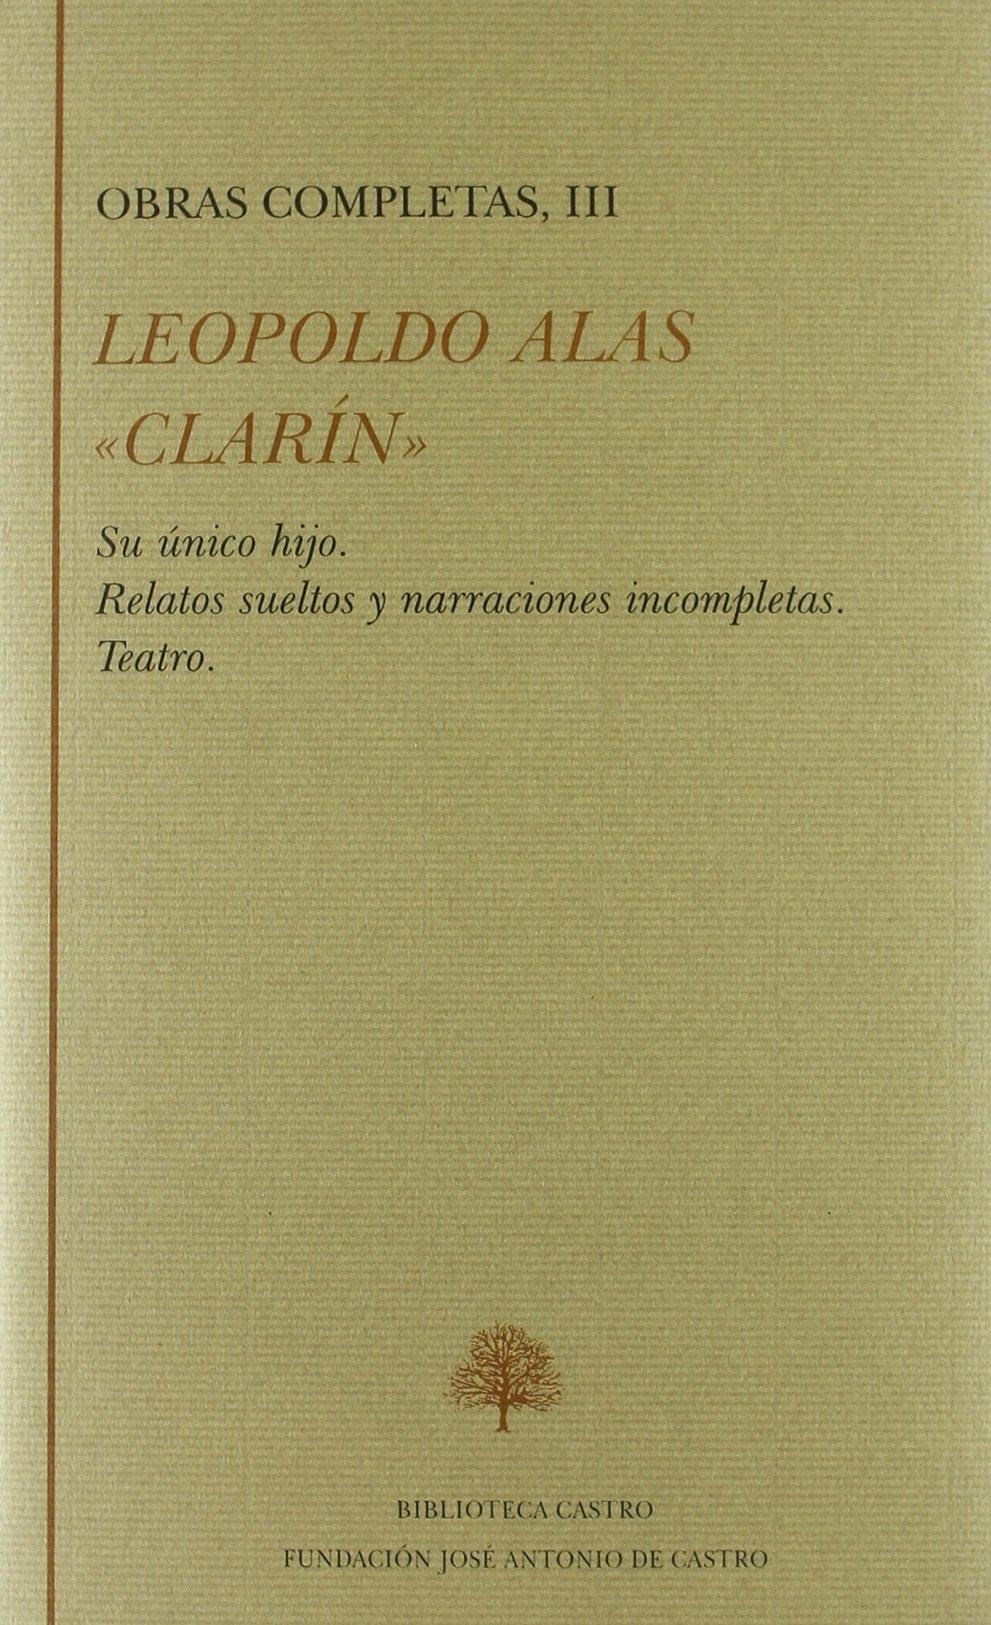 Leopoldo Alas Clarín. Obras Completas III Clarín. Único Hijo. Relatos Sueltos y Narraciones Incompletas.